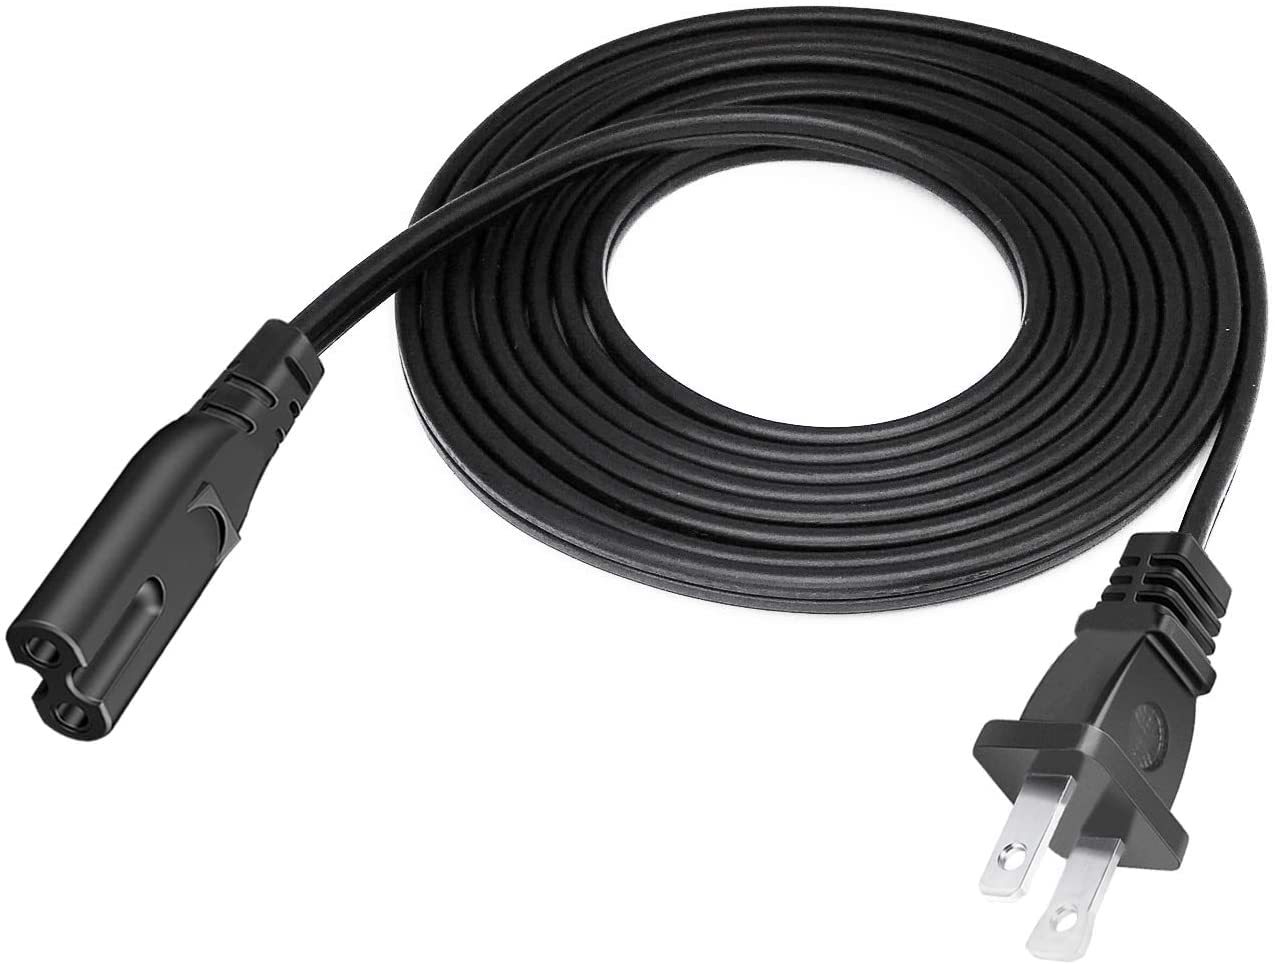 DIGITMON 10FT Premium 2-Prong Replacement AC Power Cable Compatible for Vizio Sm - $13.07